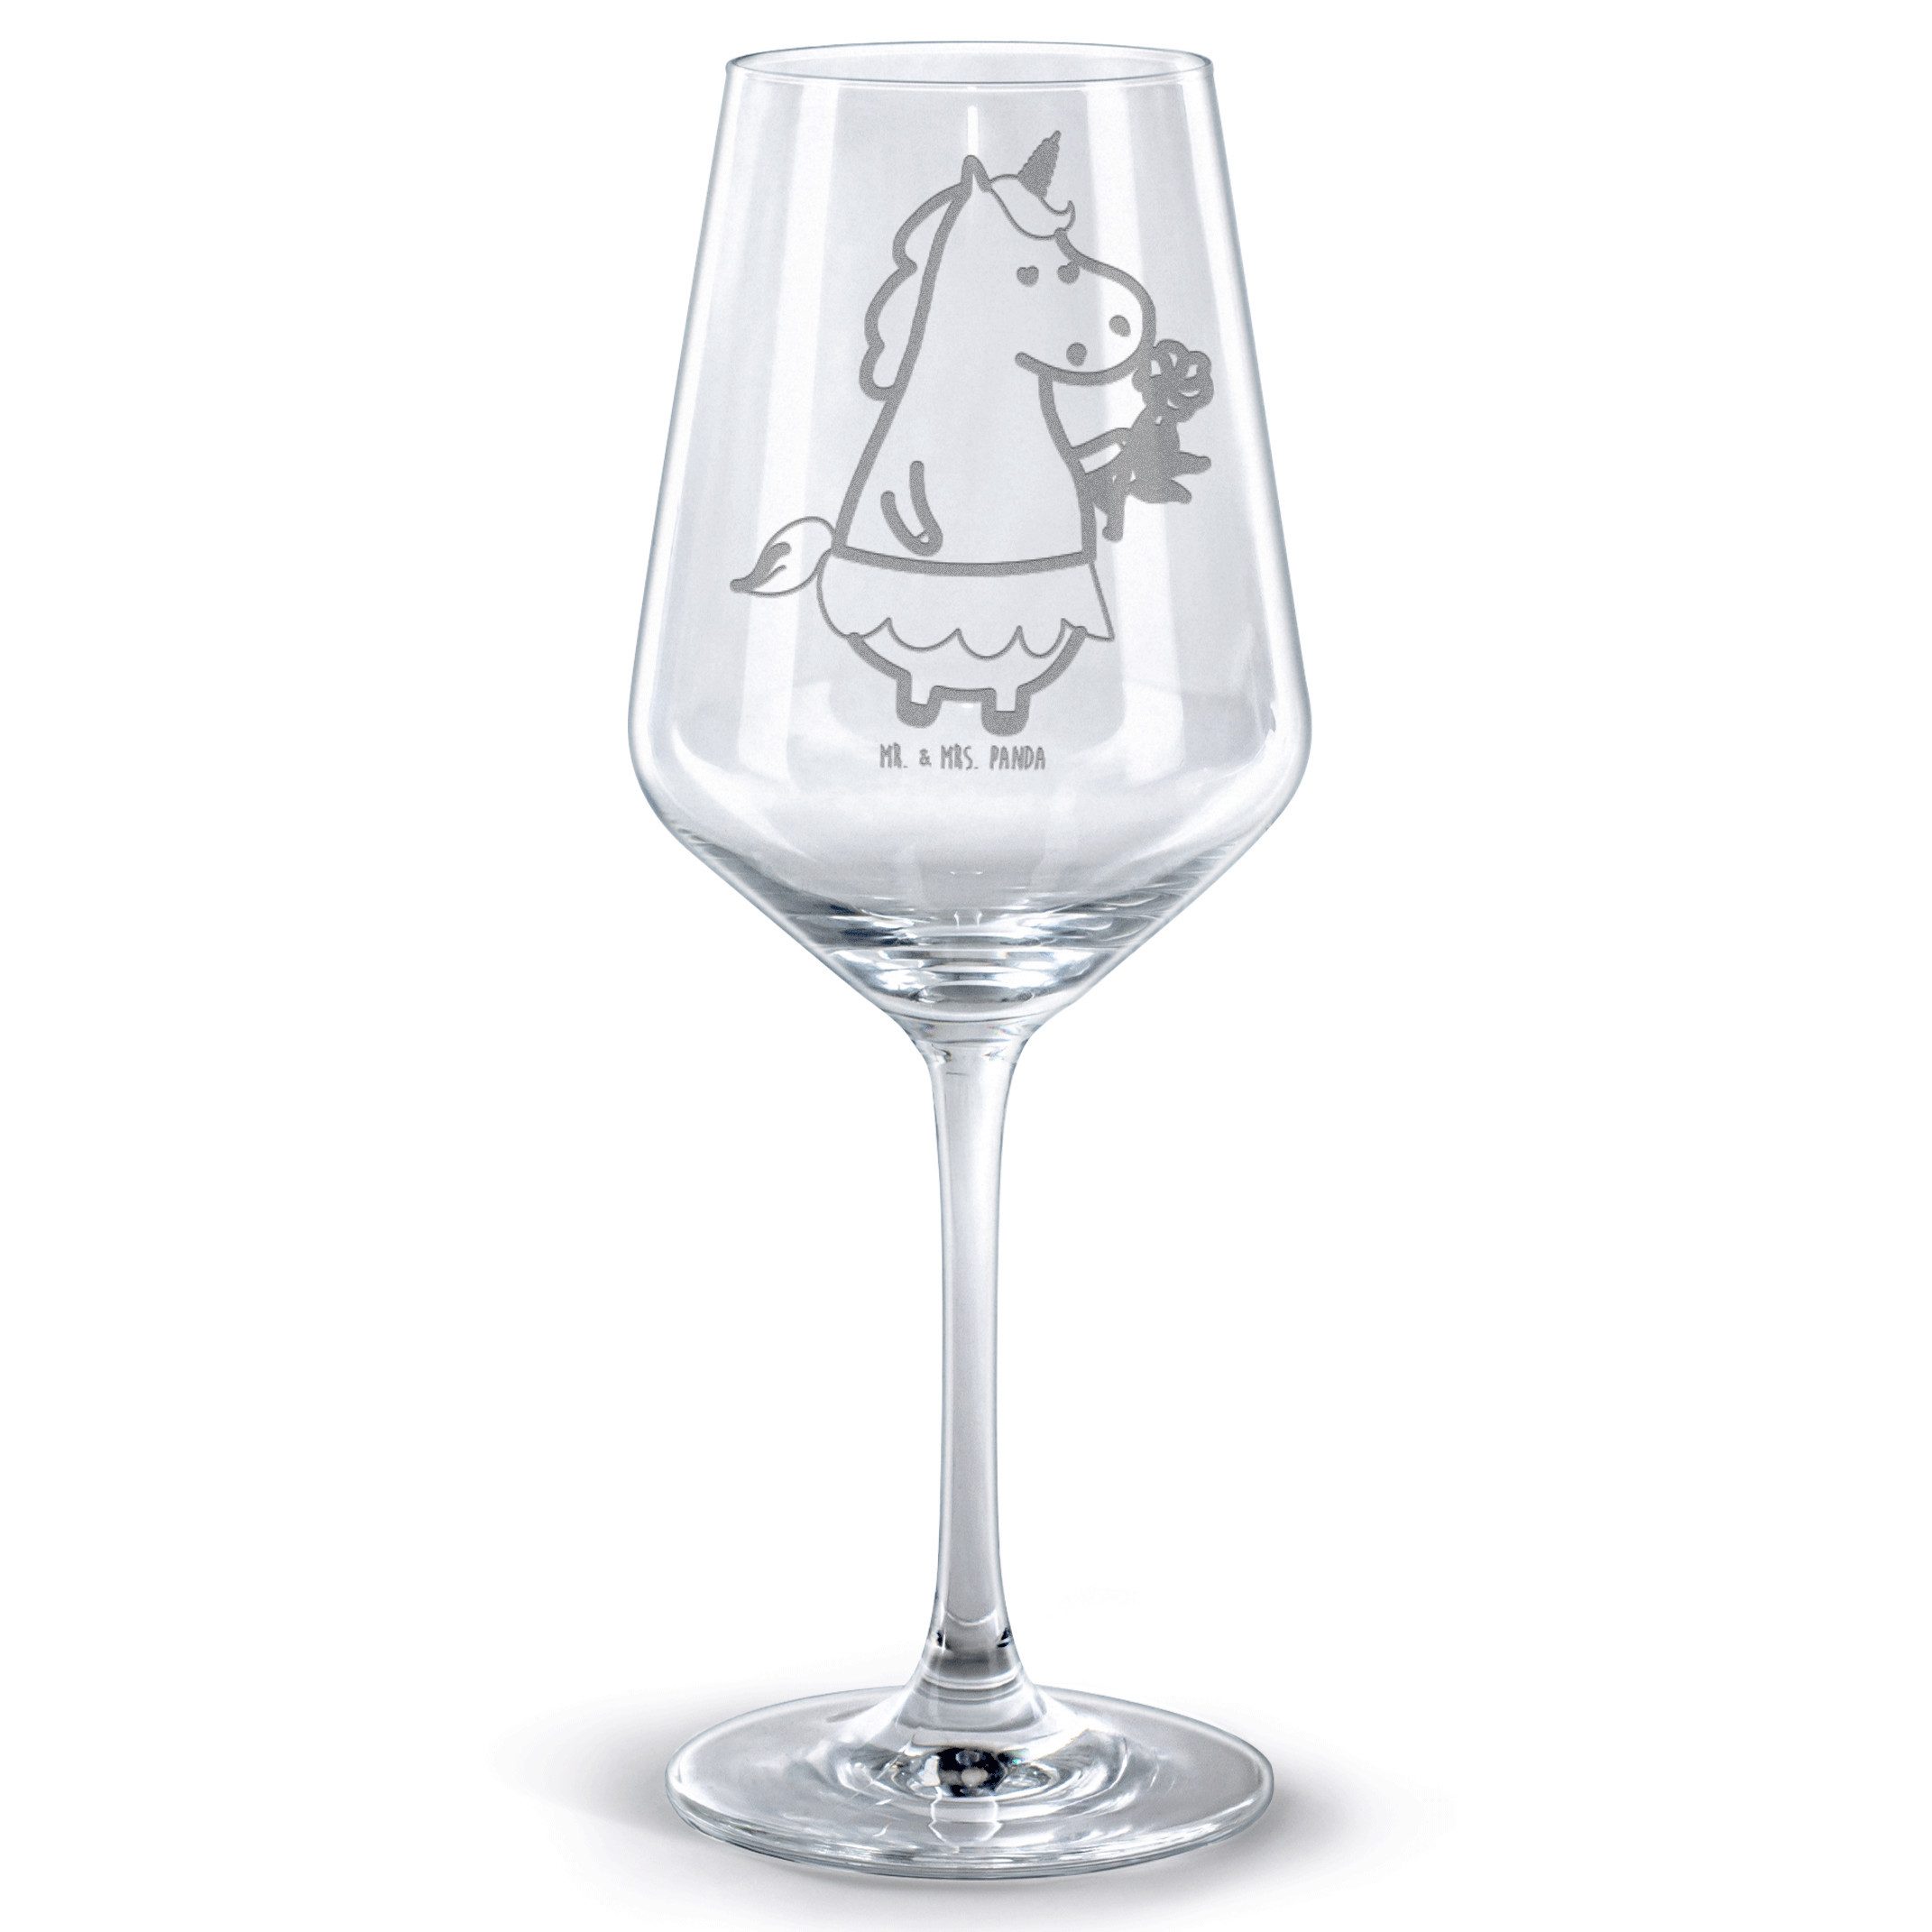 Mr. & Mrs. Panda Rotweinglas Einhorn Dame - Transparent - Geschenk, Spülmaschinenfeste Weingläser, Premium Glas, Stilvolle Gravur